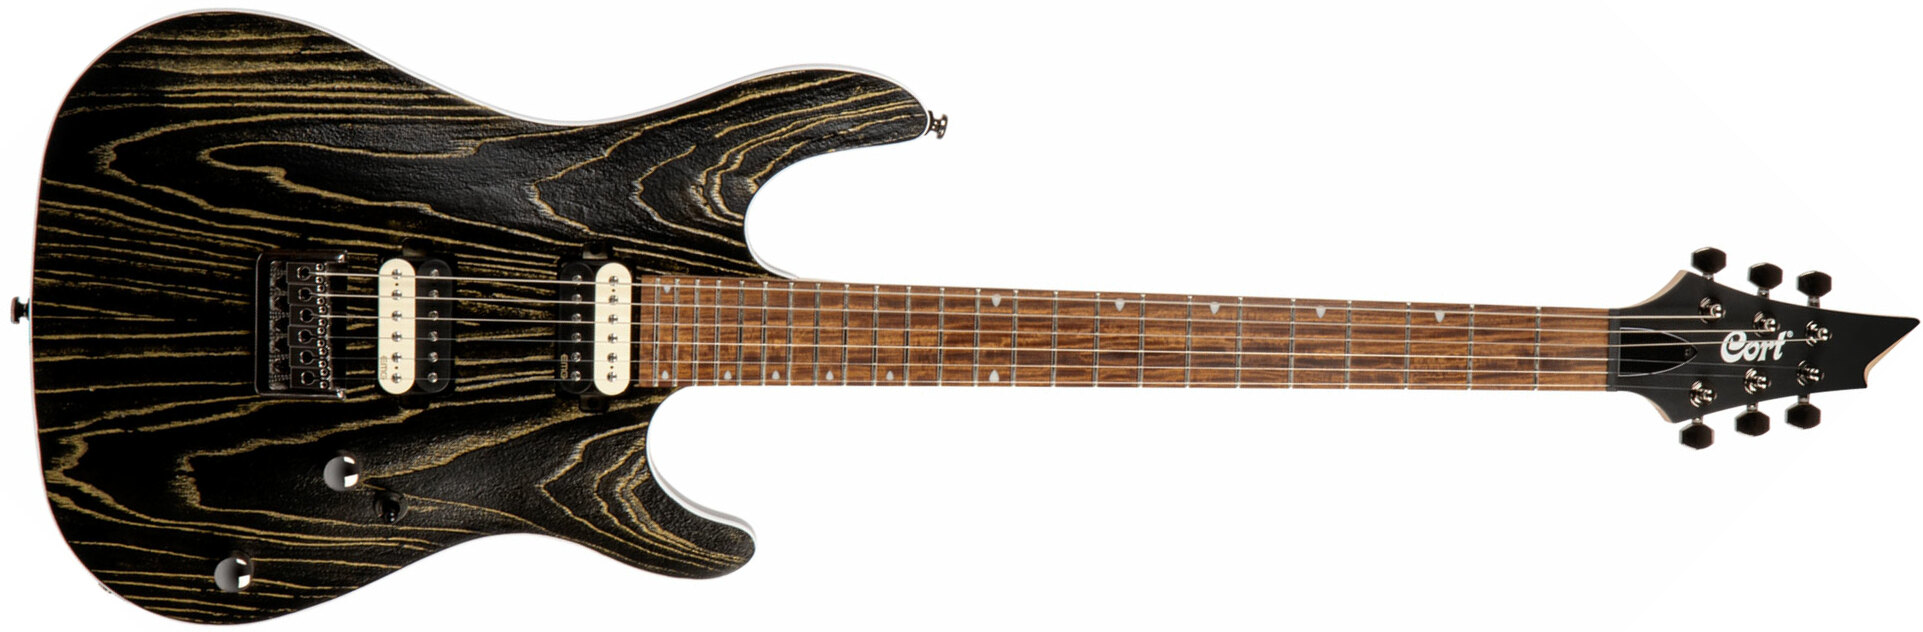 Cort Kx300 Ebr Hh Emg Ht Jat - Etched Black Gold - Guitarra eléctrica con forma de str. - Main picture